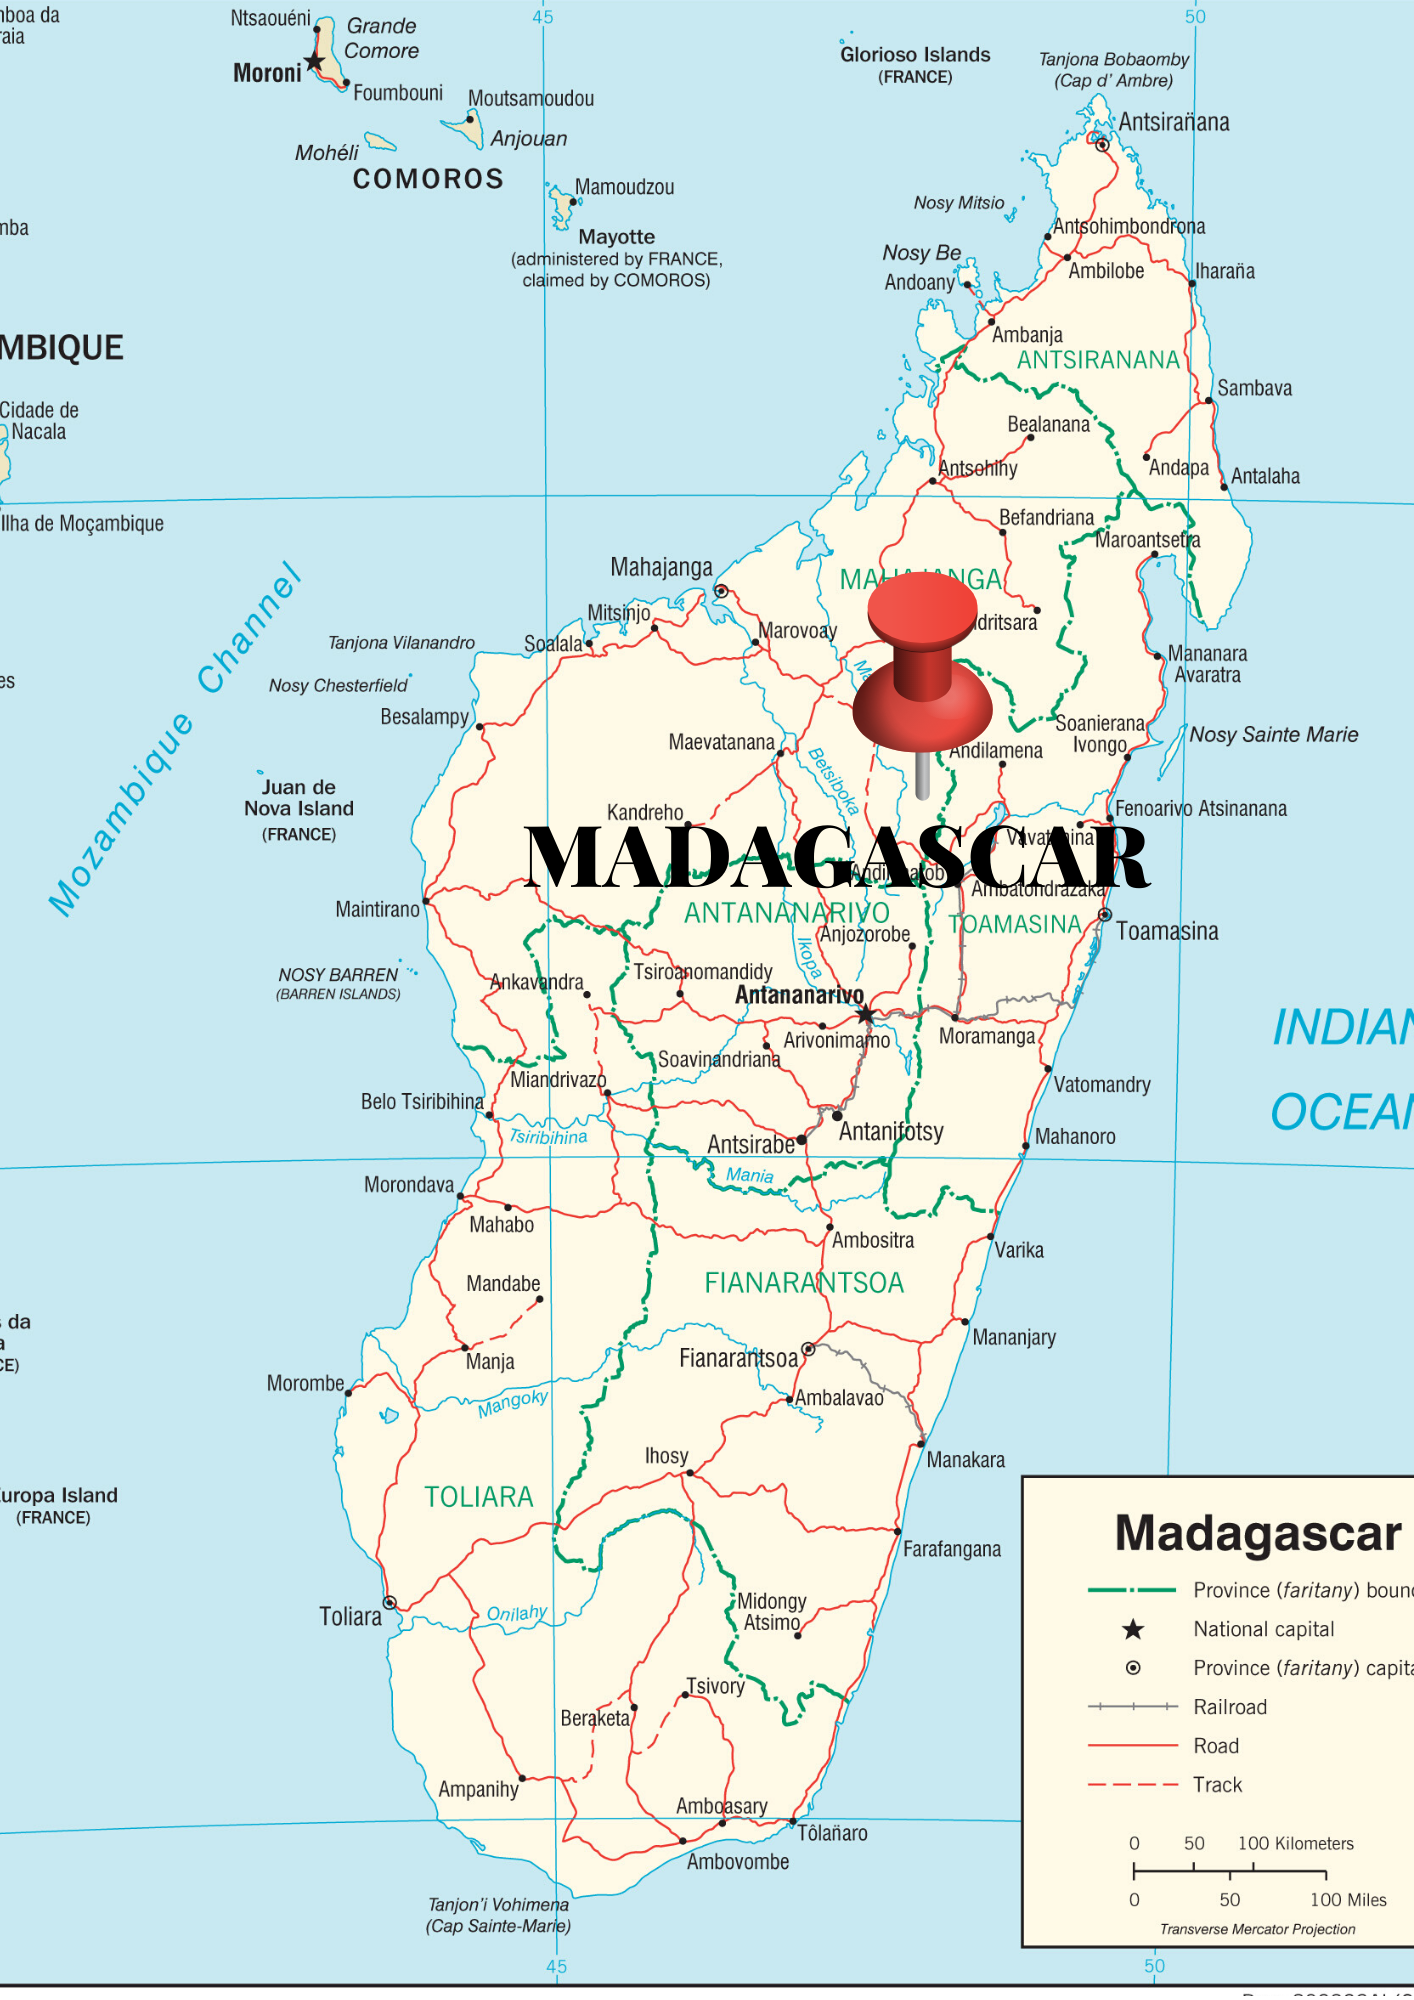 madagascar_mapa-4.png